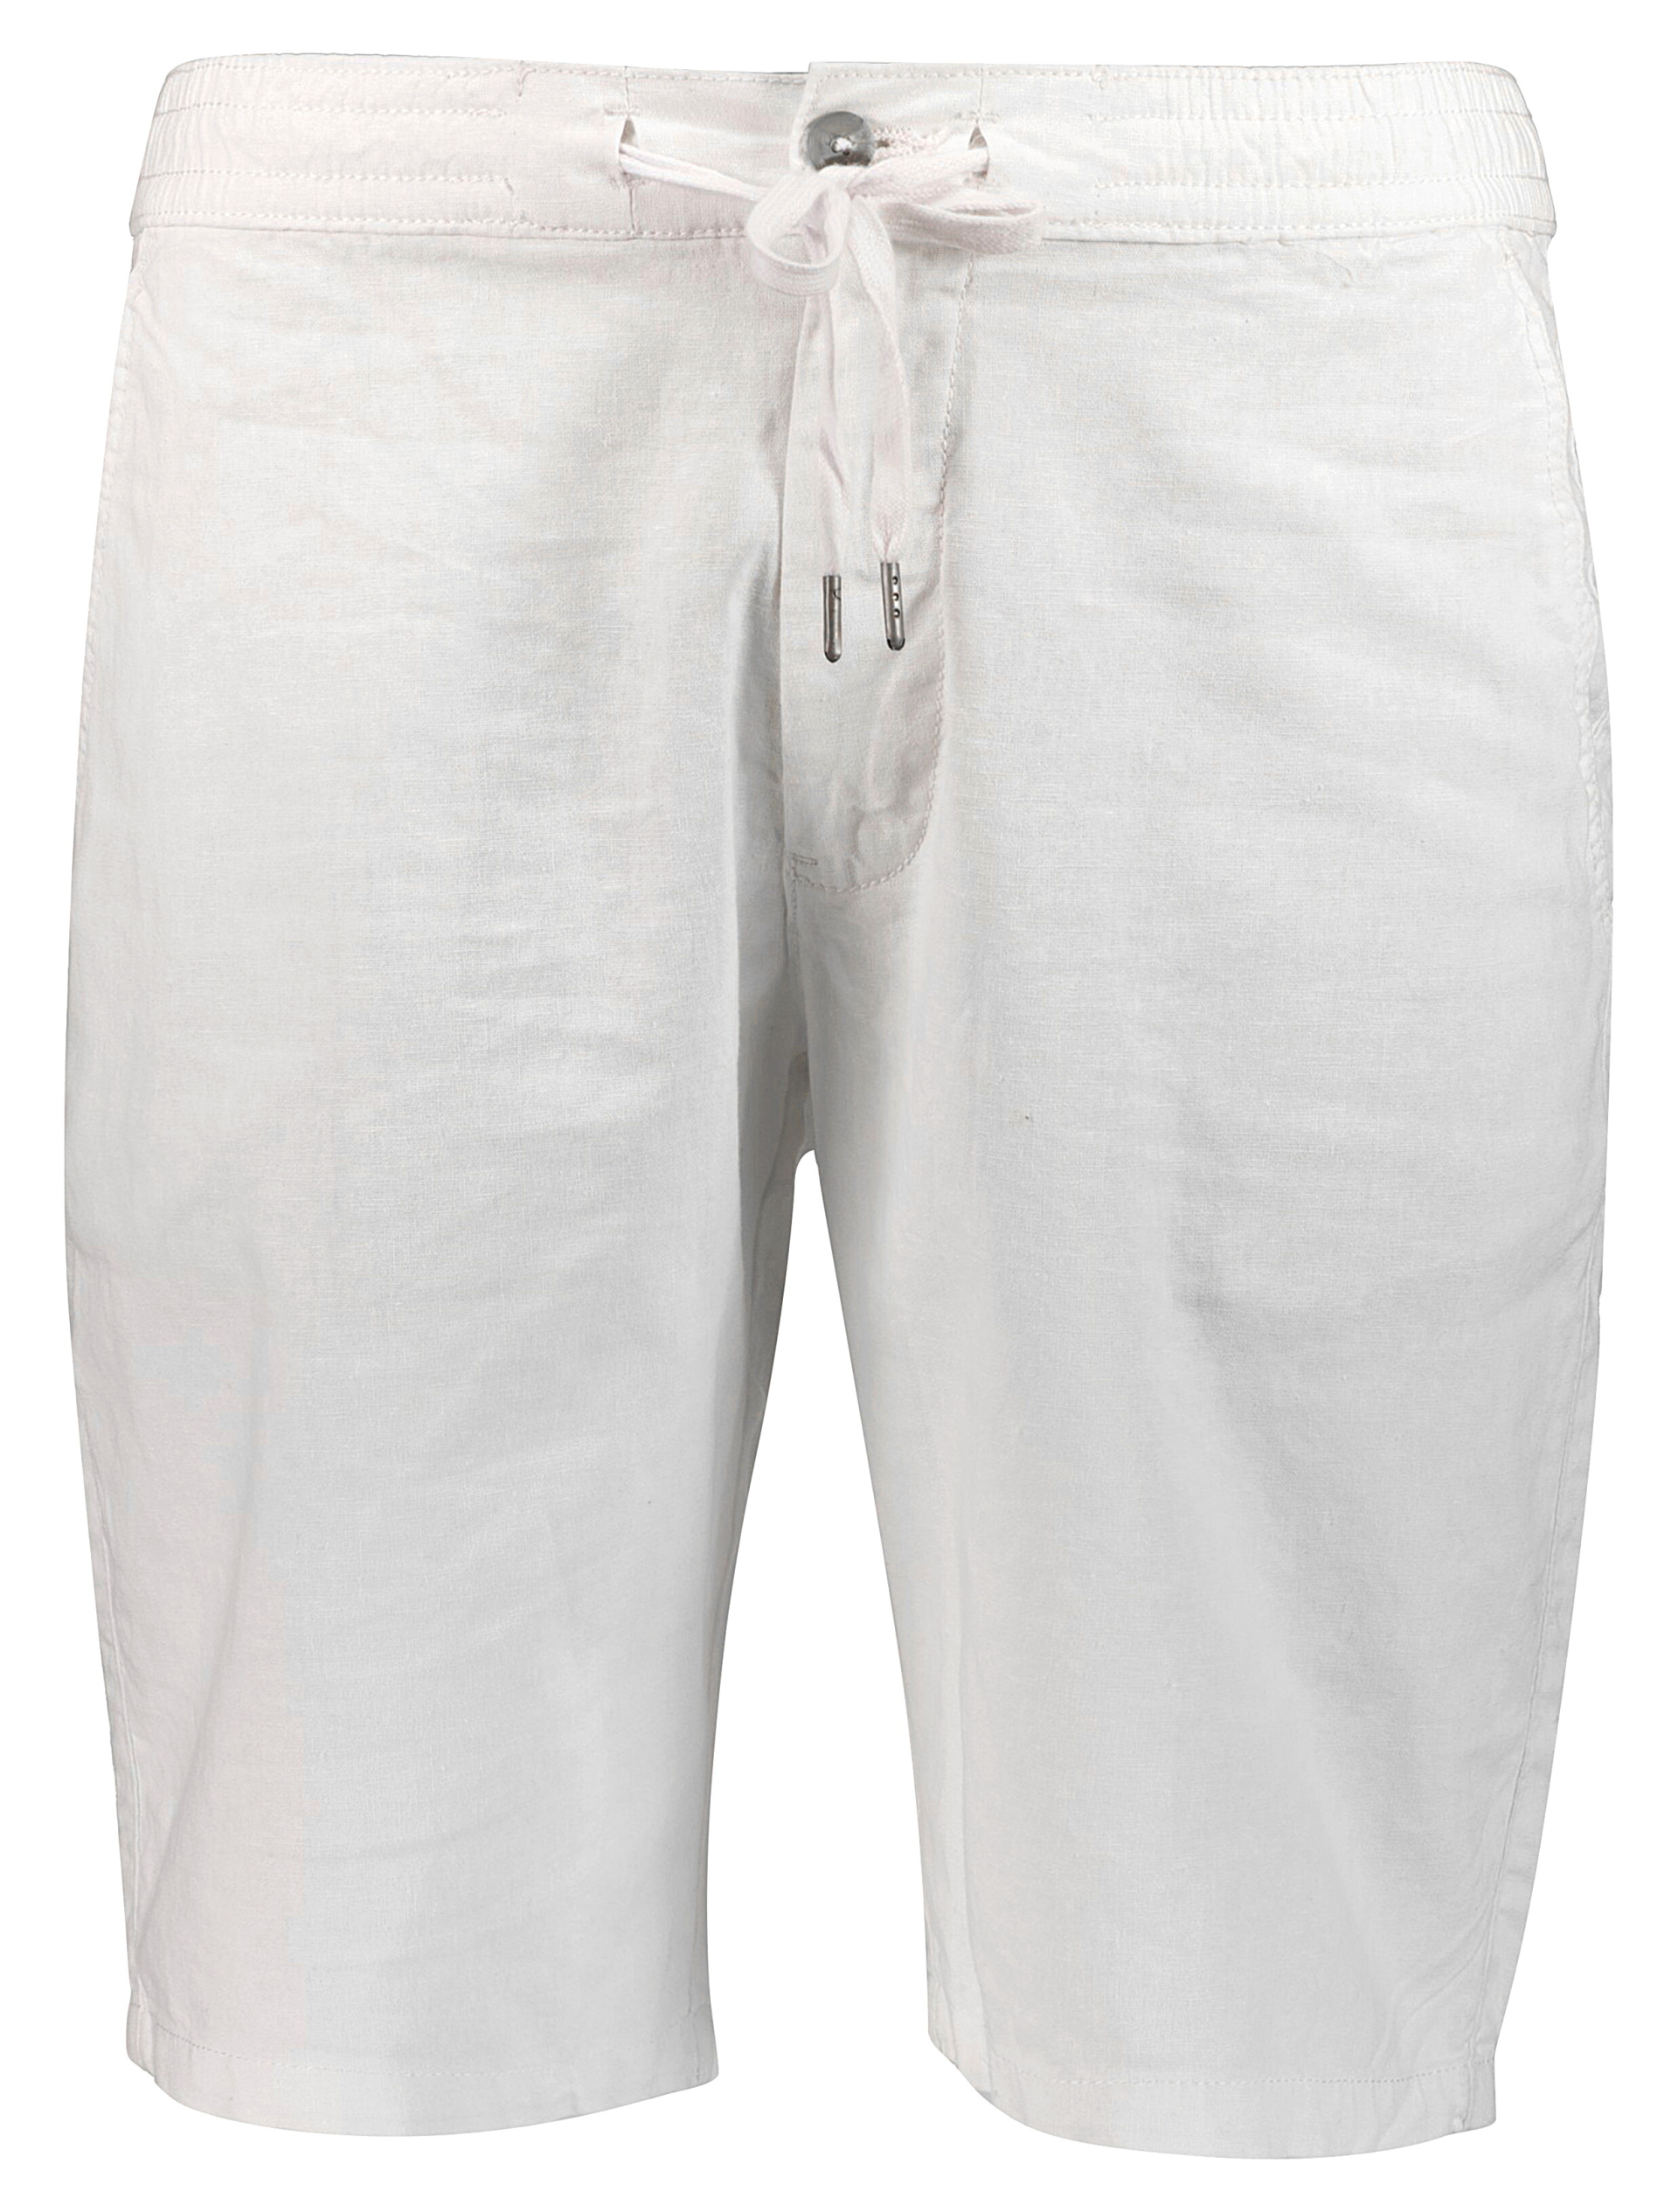 Lindbergh Linen shorts white / white